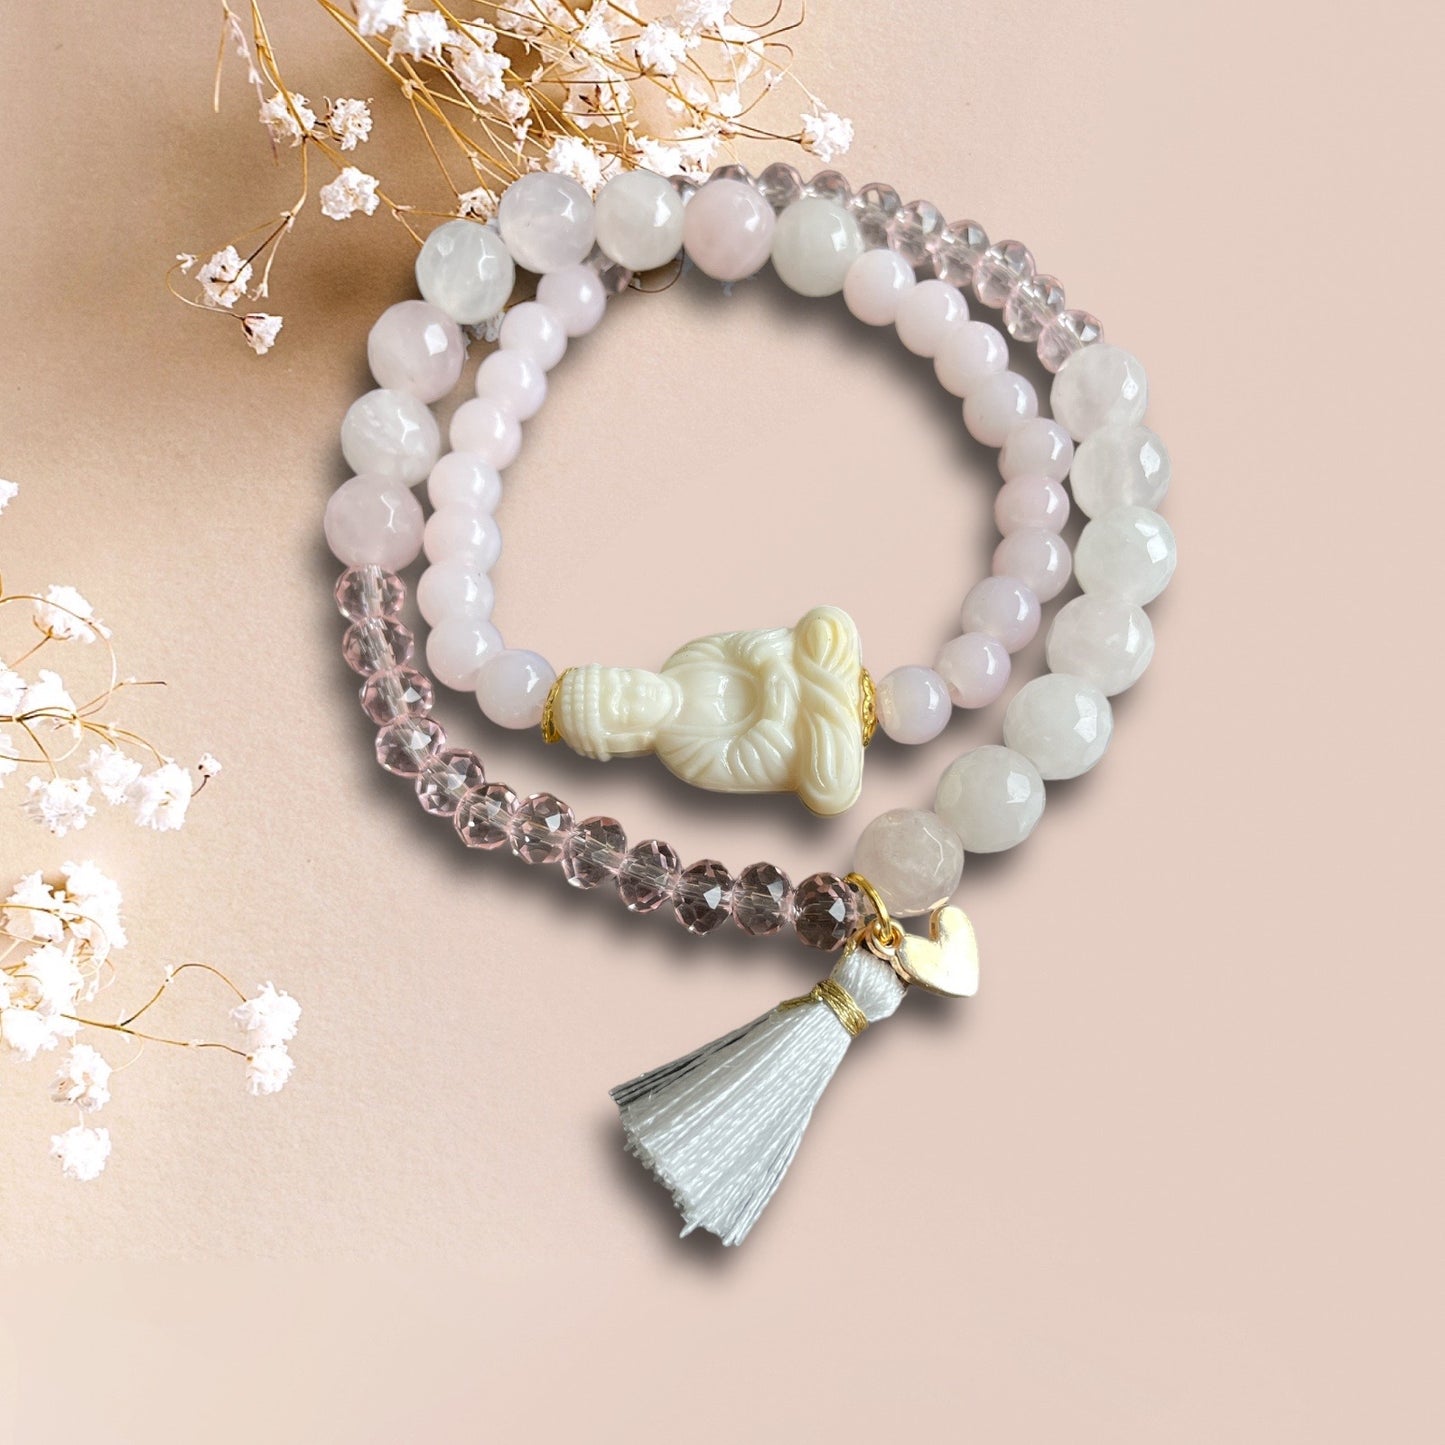 Armband MALCU aus Rosenquarz Perlen mit einer Buddha Perle